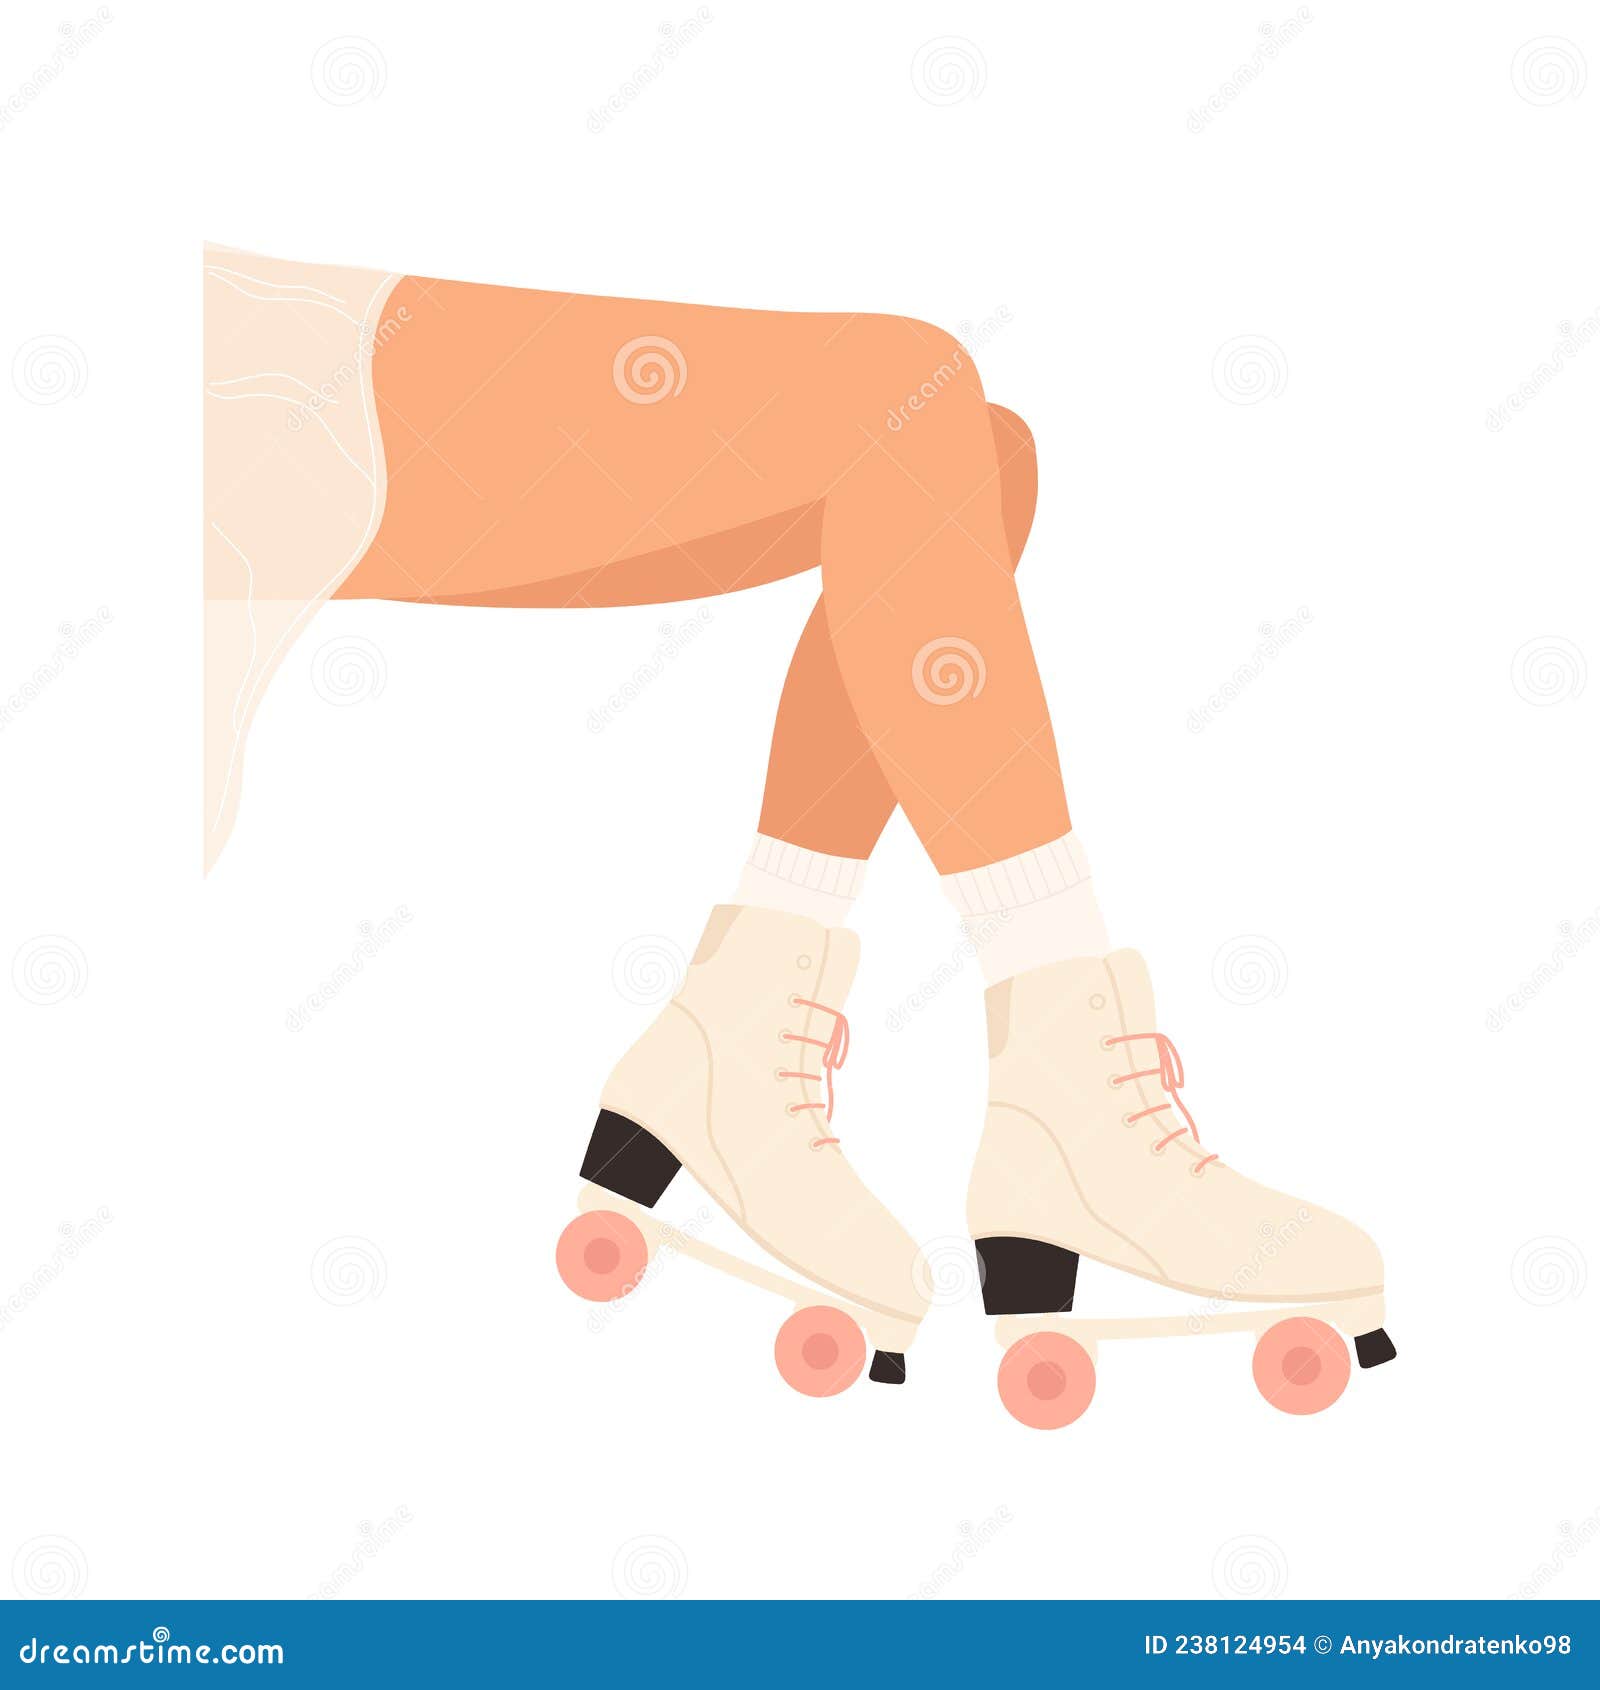 https://thumbs.dreamstime.com/z/jambes-des-femmes-en-patins-%C3%A0-rouleaux-chaussure-de-patin-roulettes-roses-illustration-vectorielle-dans-le-style-dessin-anim%C3%A9-238124954.jpg